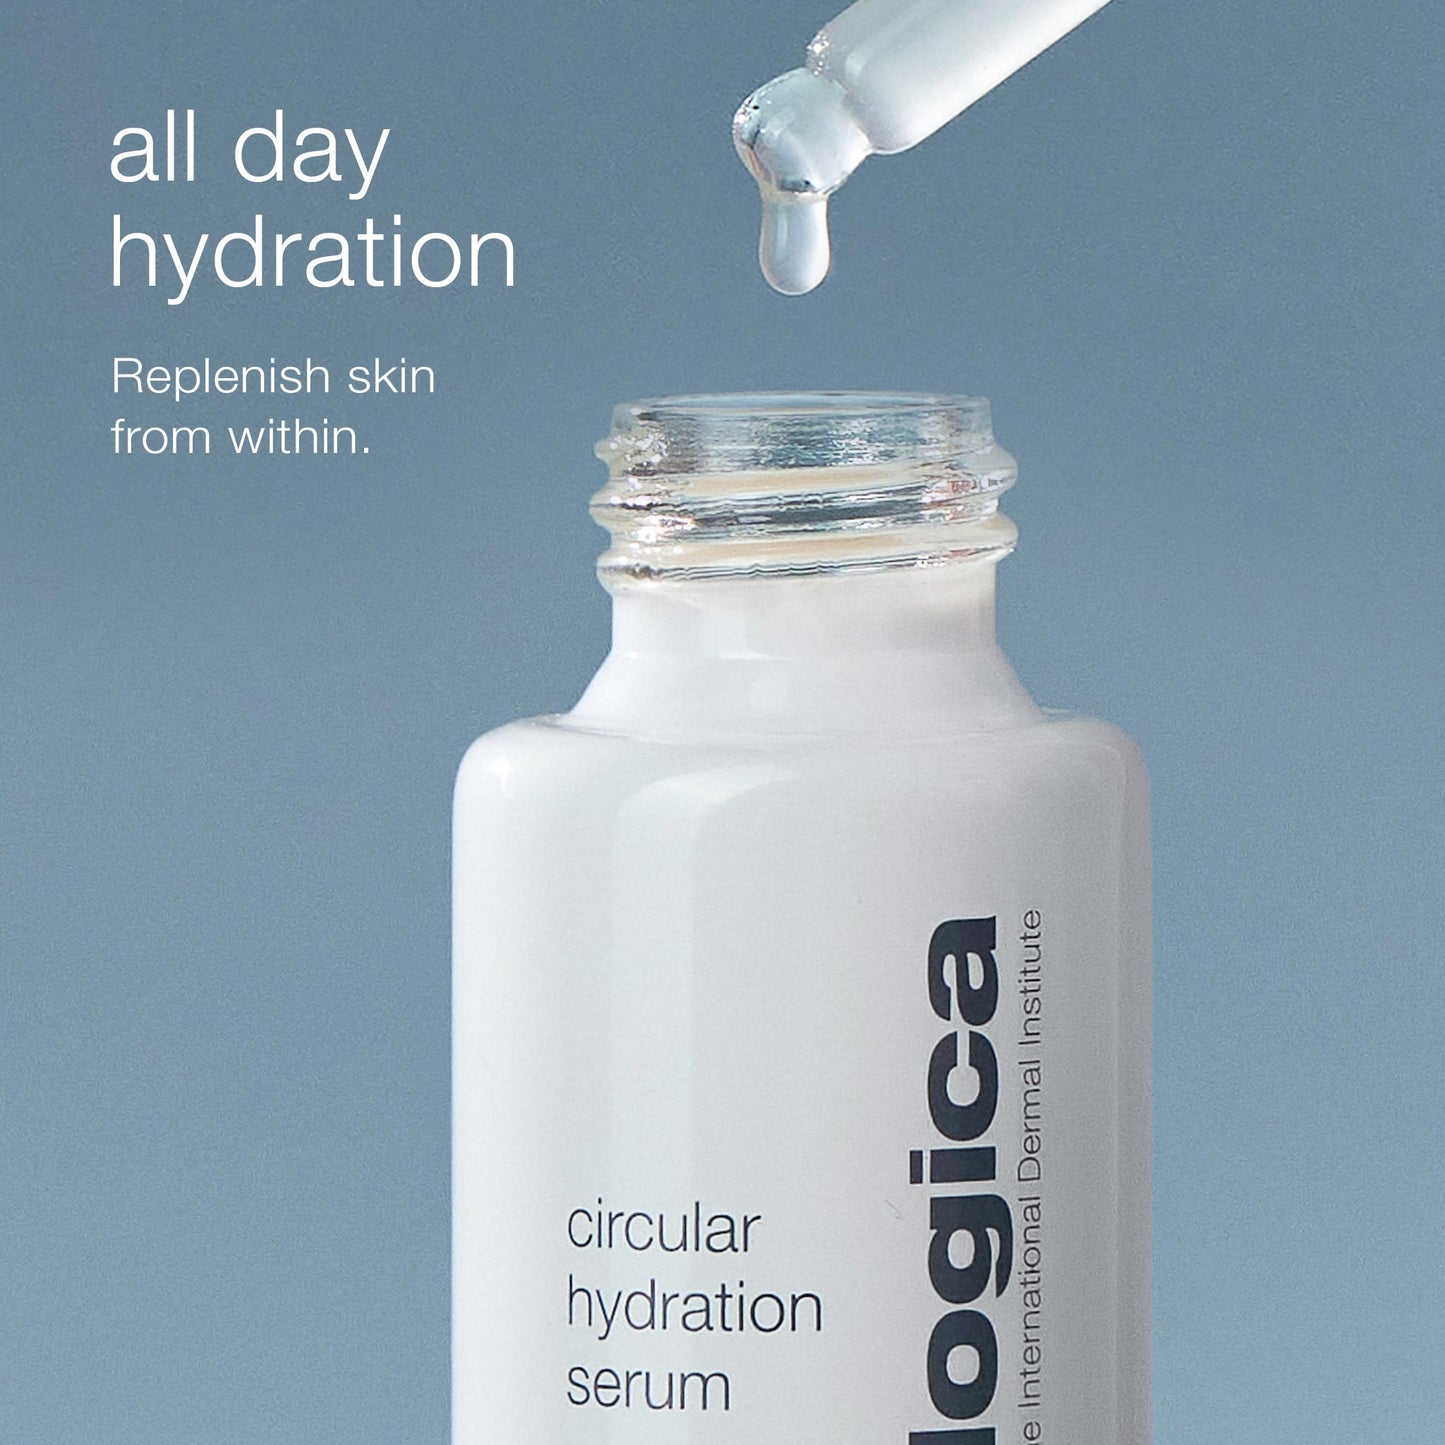 circular hydration serum all day hydration